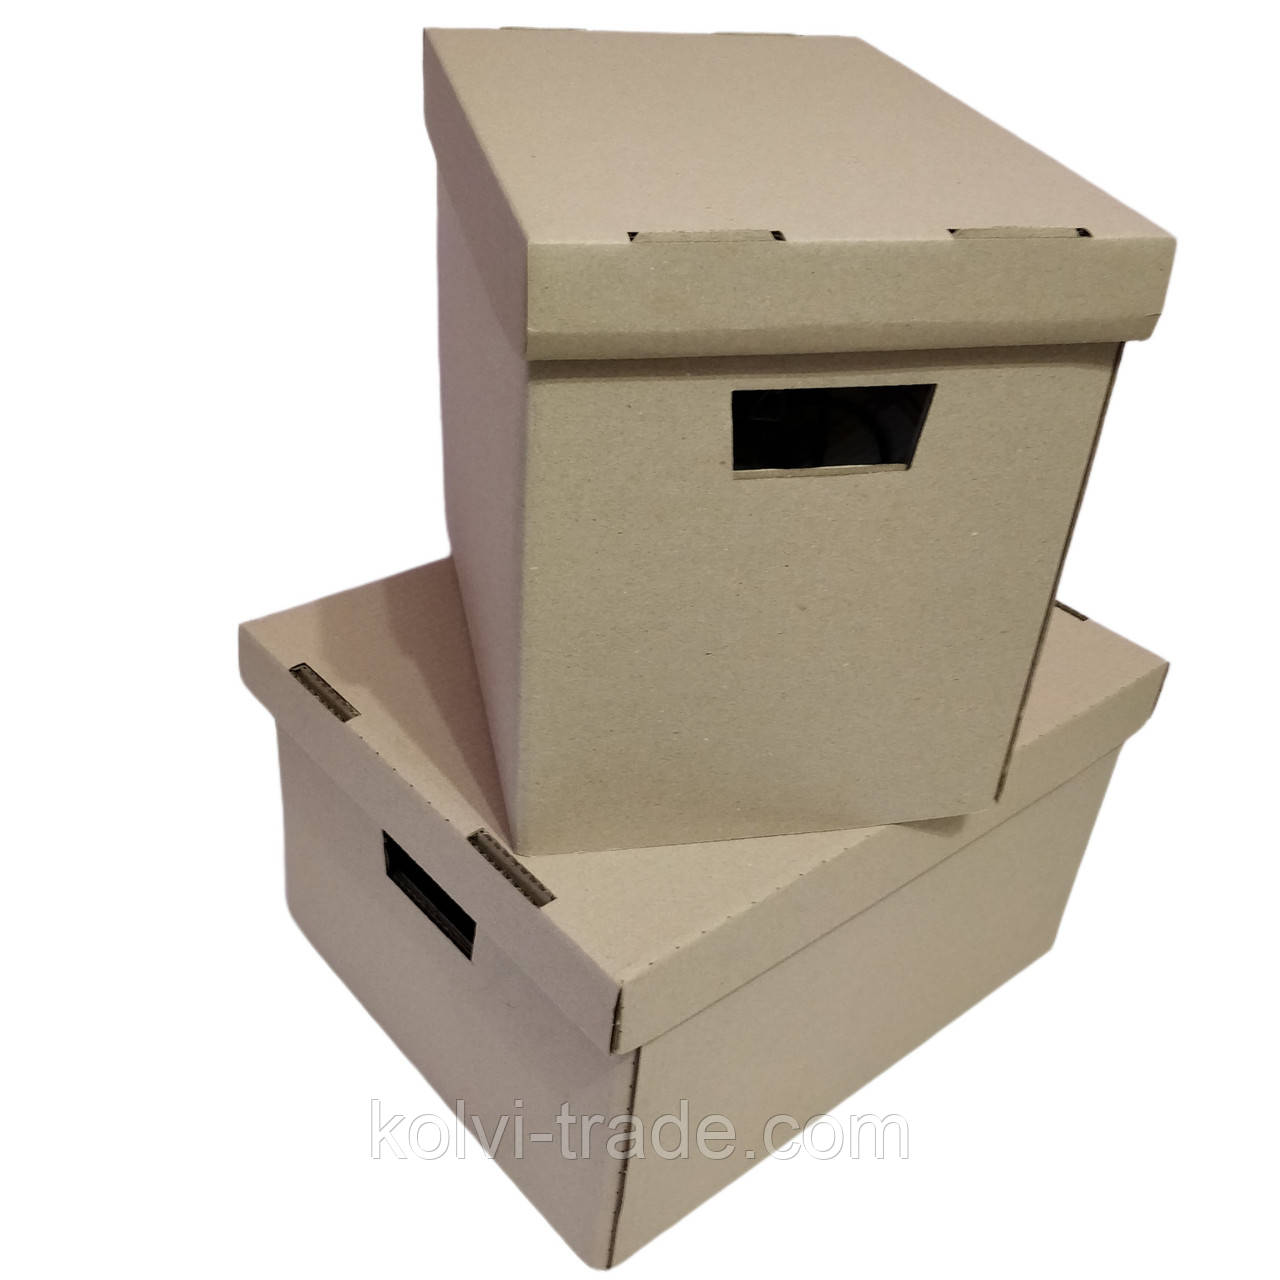 Архивний короб з гофрокартону для зберігання документів до 20кг, ГОСТ, 330*300*245 мм (GP-330-4) Колві